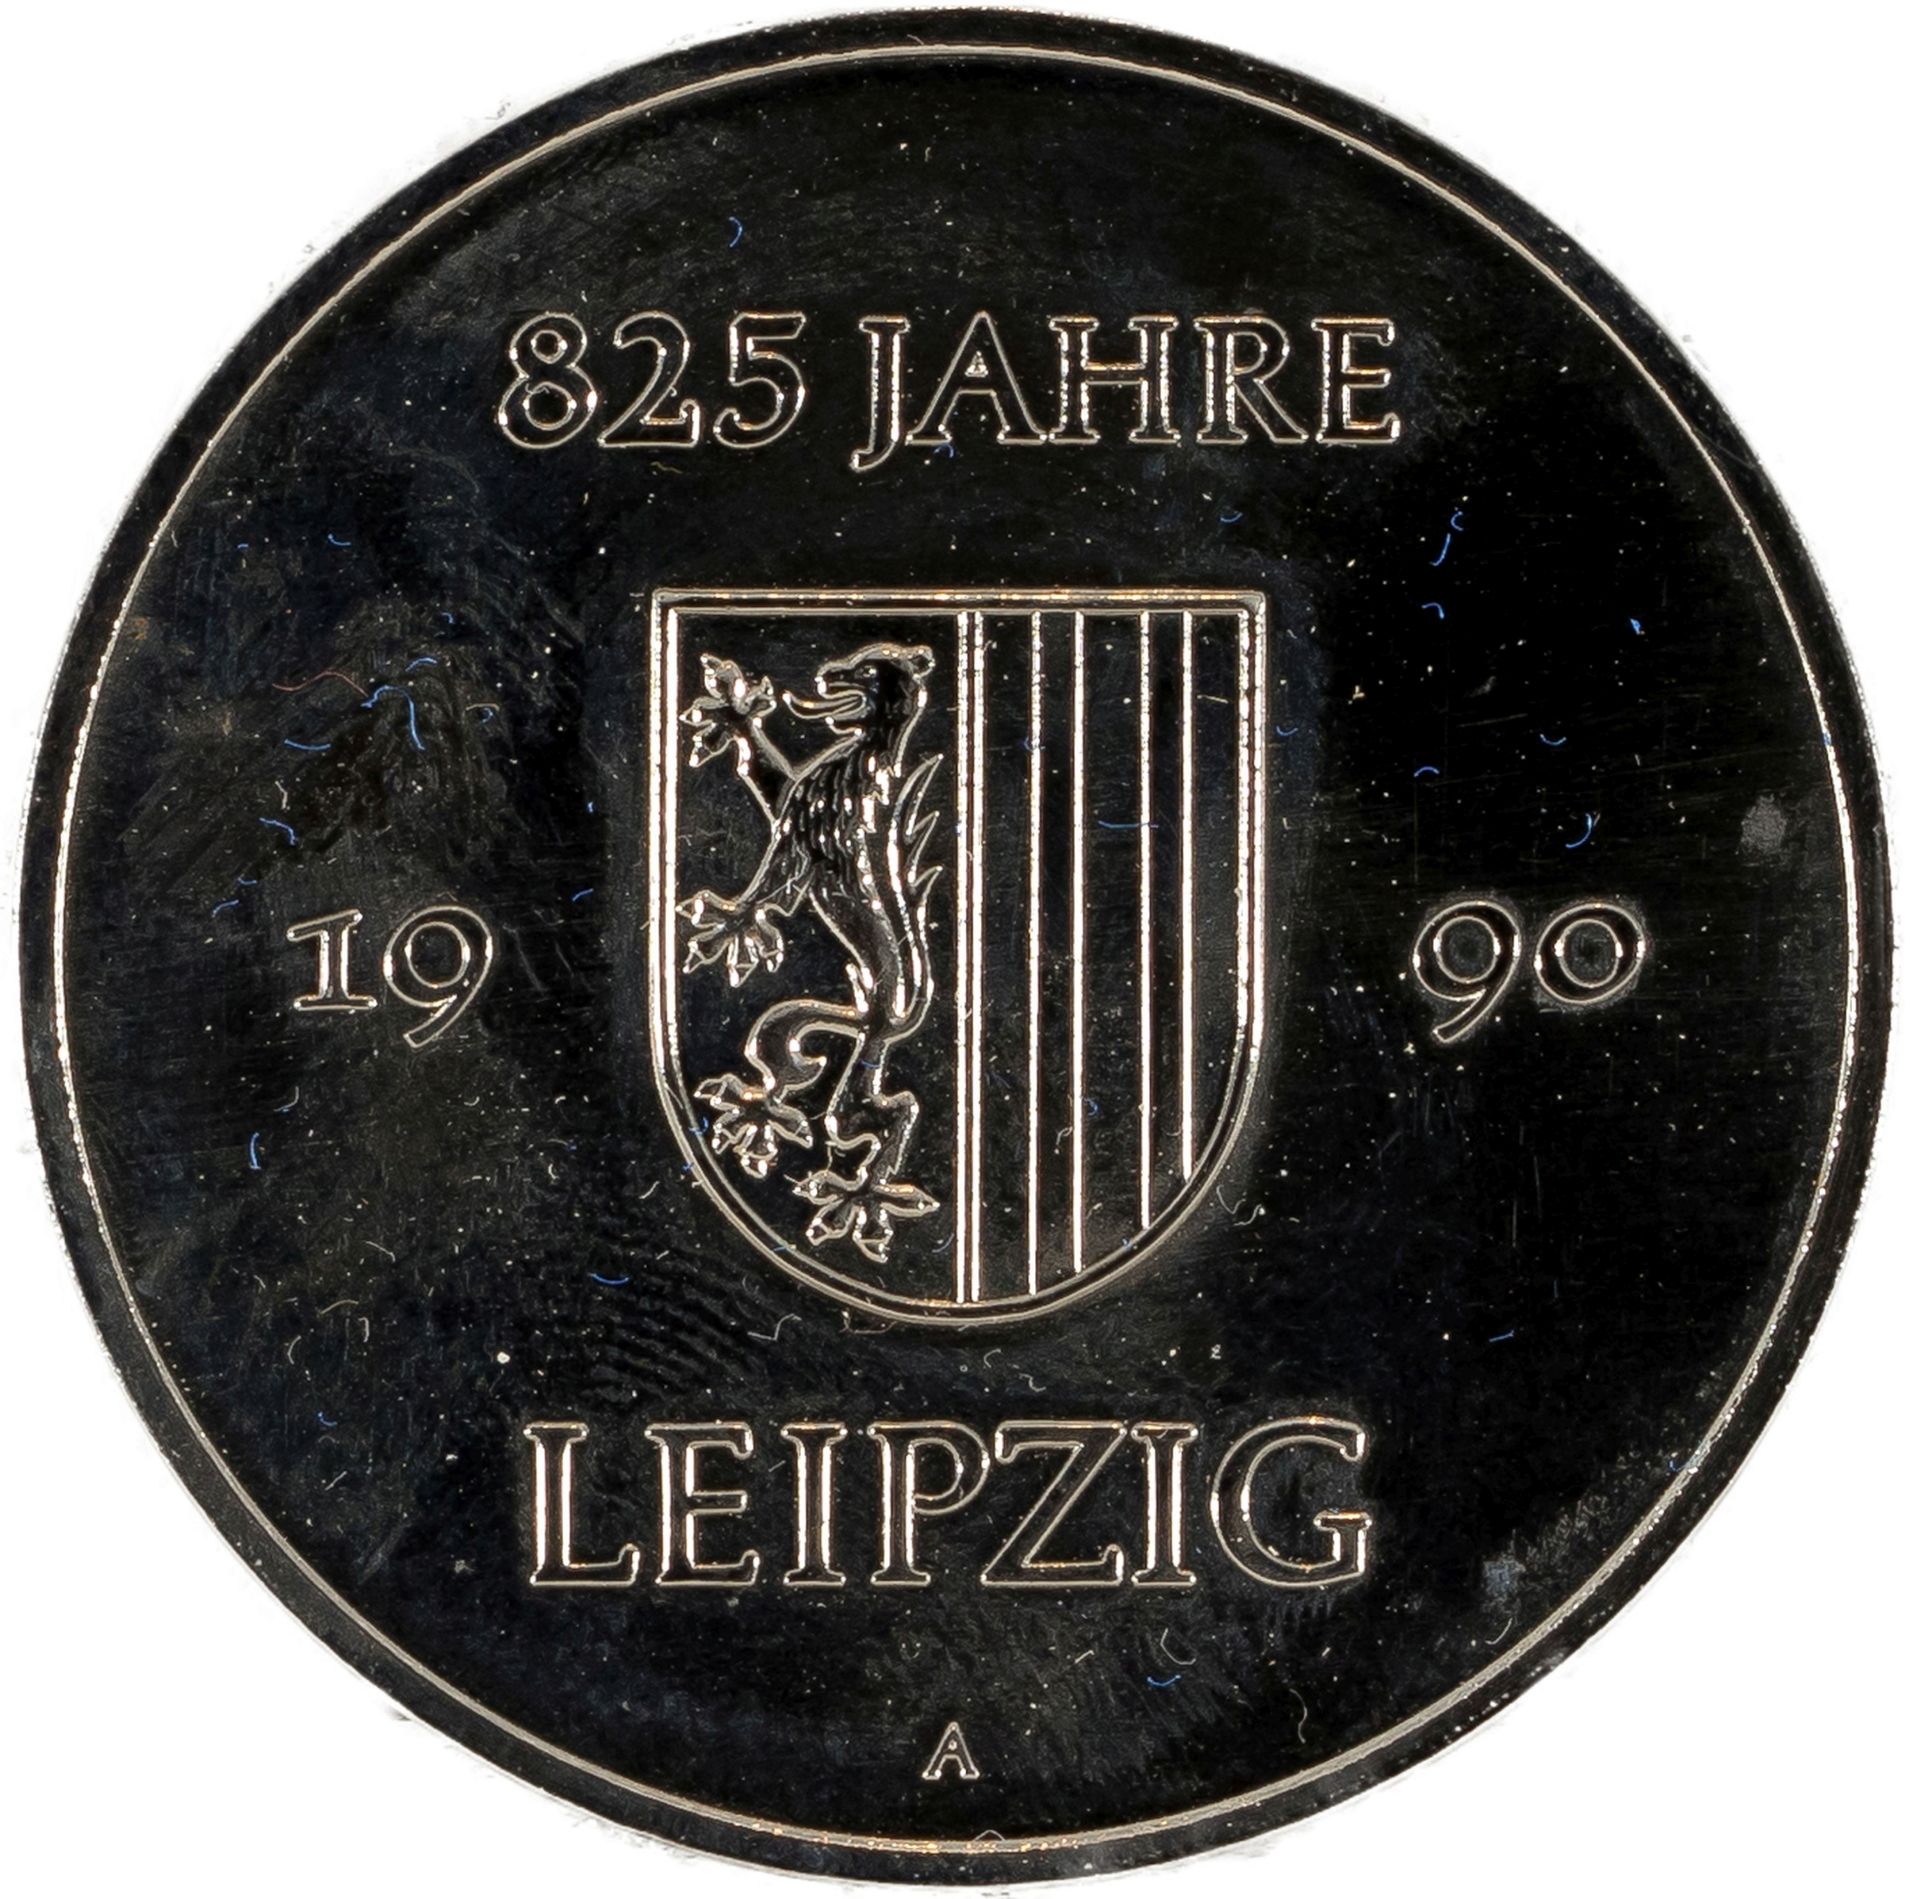 Konvolut von 3 Silbermedaillen zu "825 Jahre Leipzig" - Bild 7 aus 7